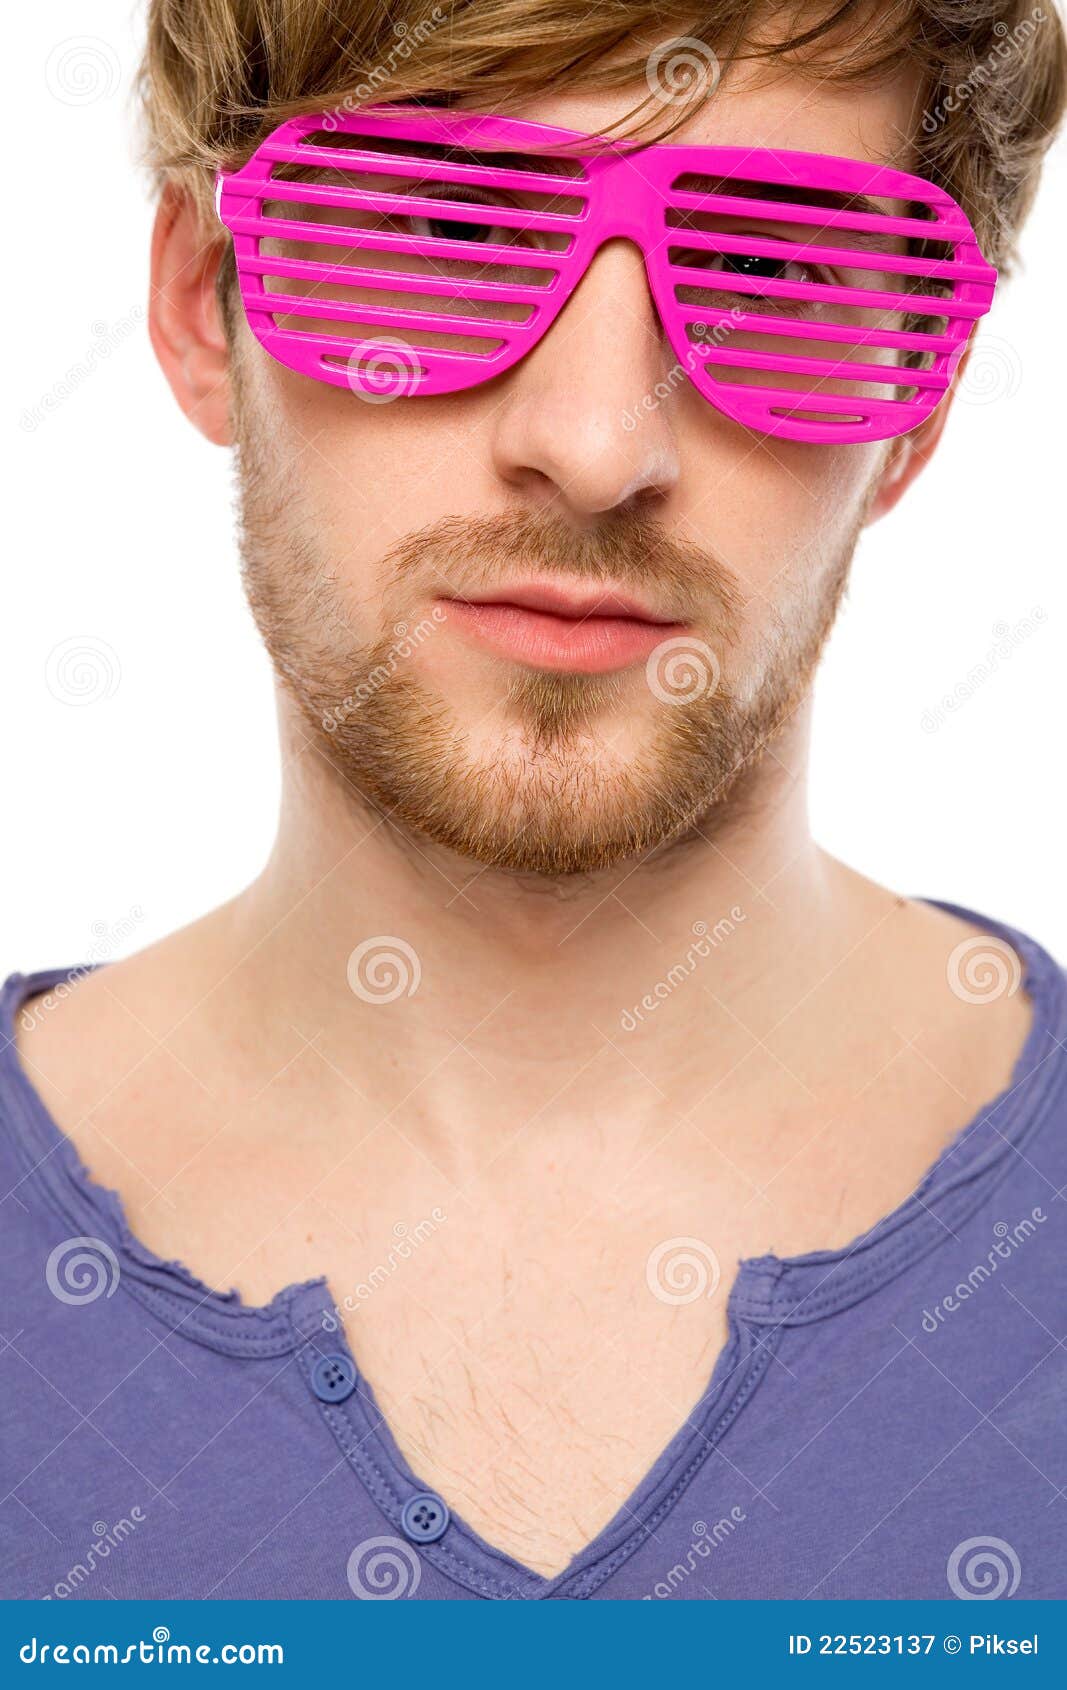 Розовые мужские очки. Розовые очки мужские. Мужчина в розовых очках. Мужчины Светловолосые в очках. Мужчина с розовыми очками.